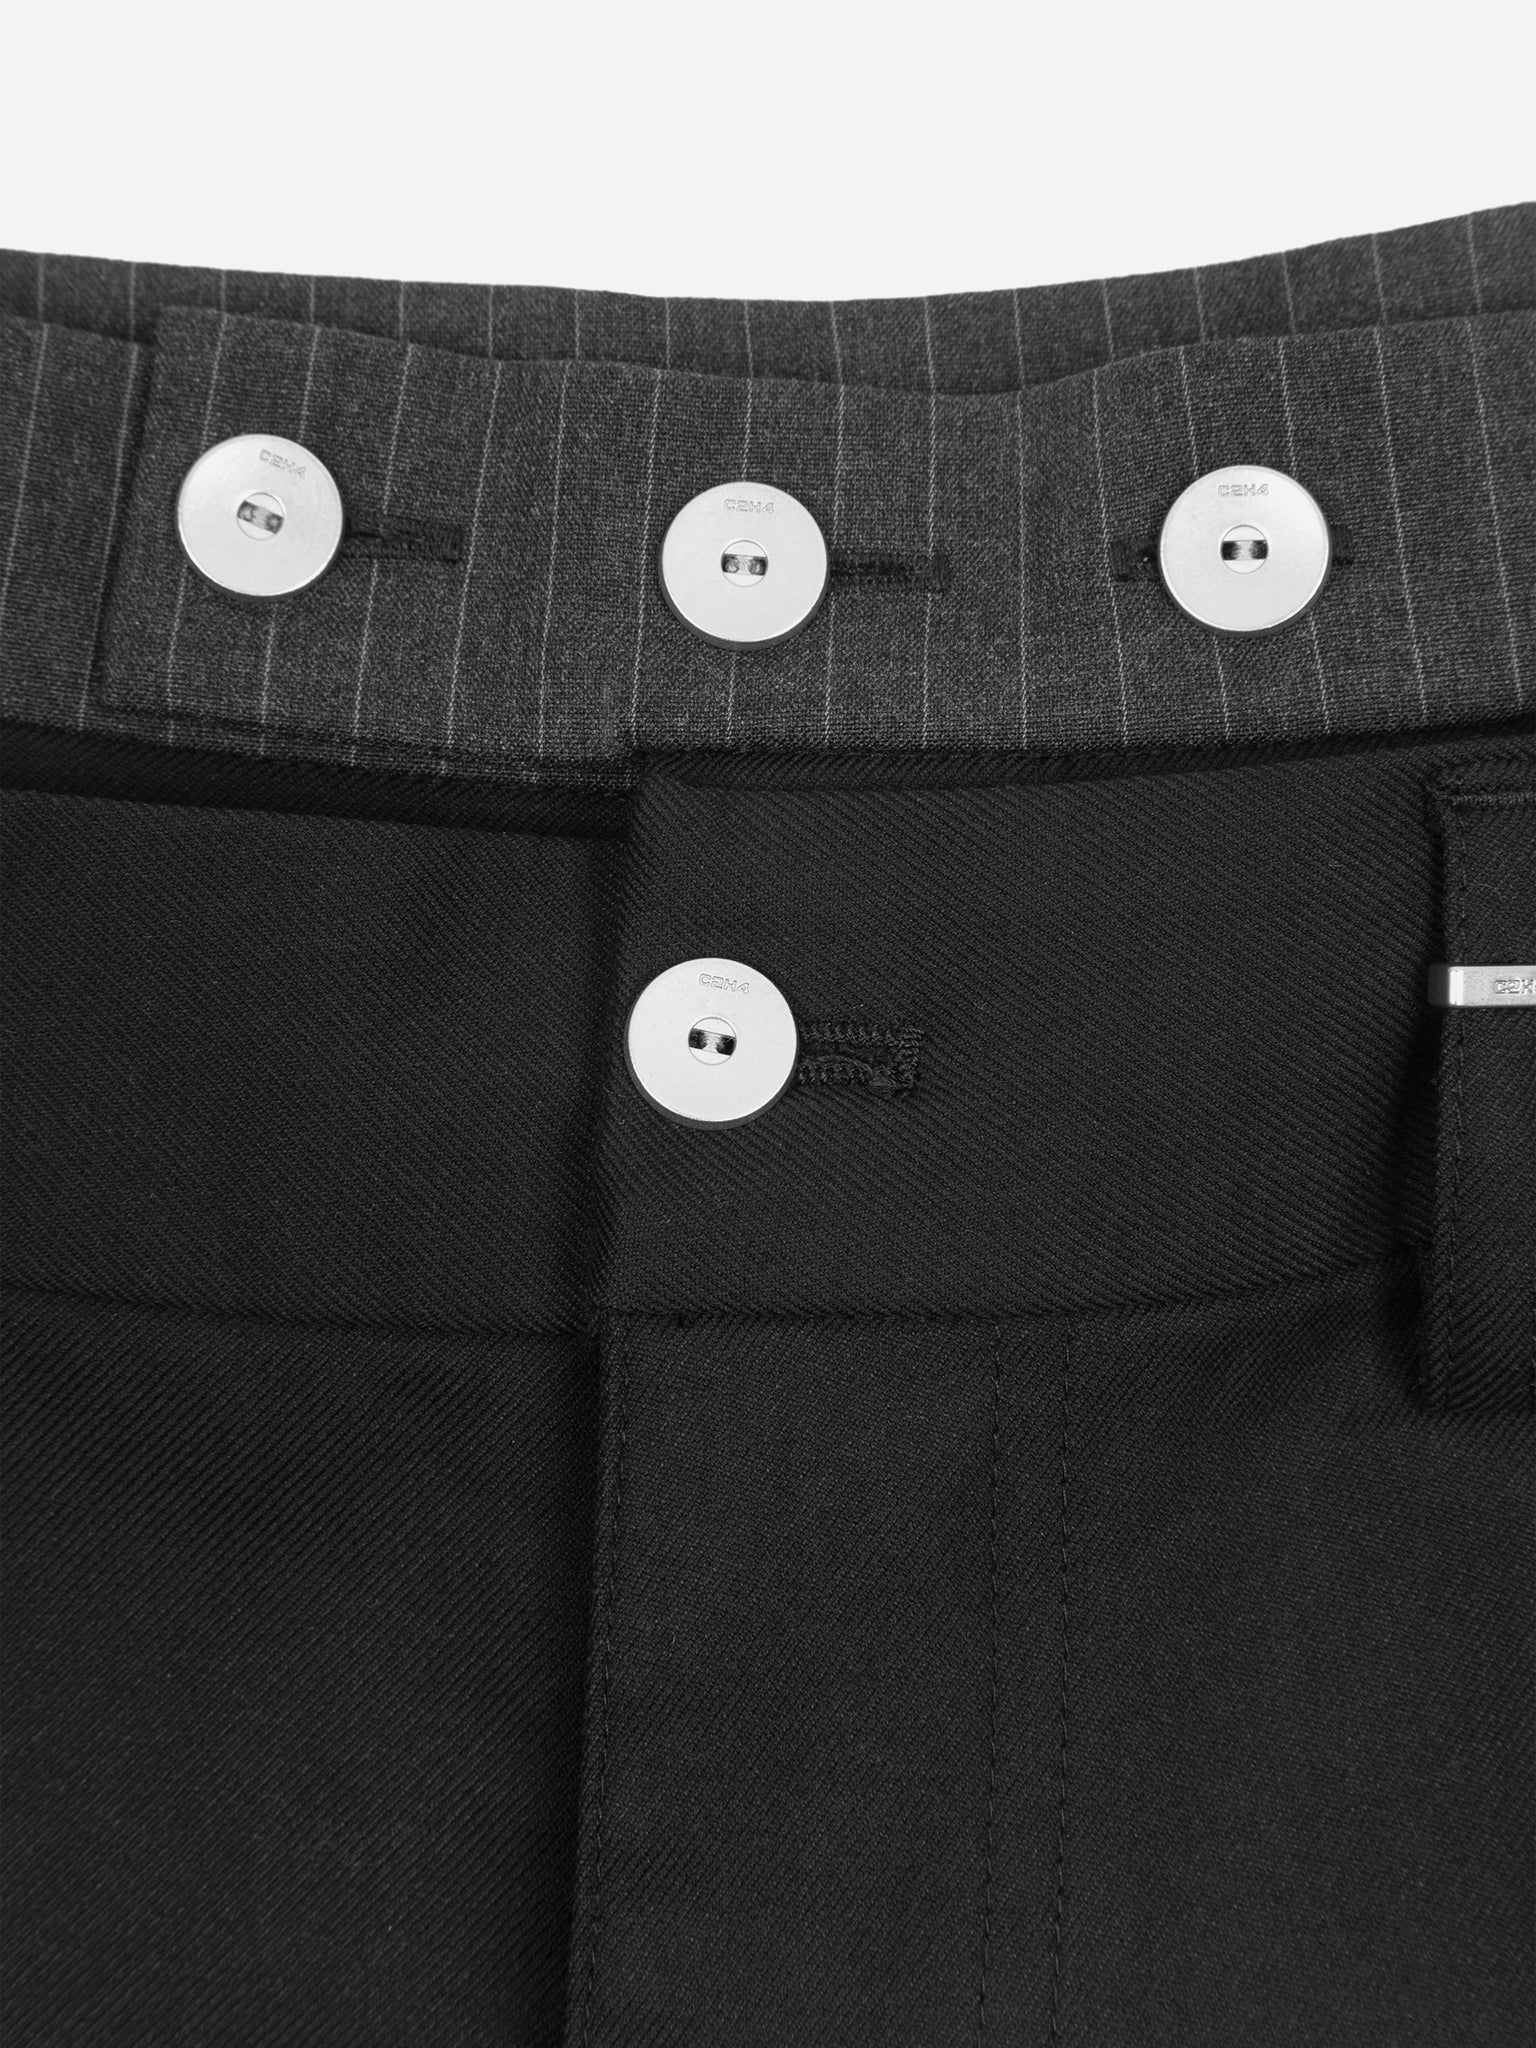 007 - Basics Pants Chain - C2H4®